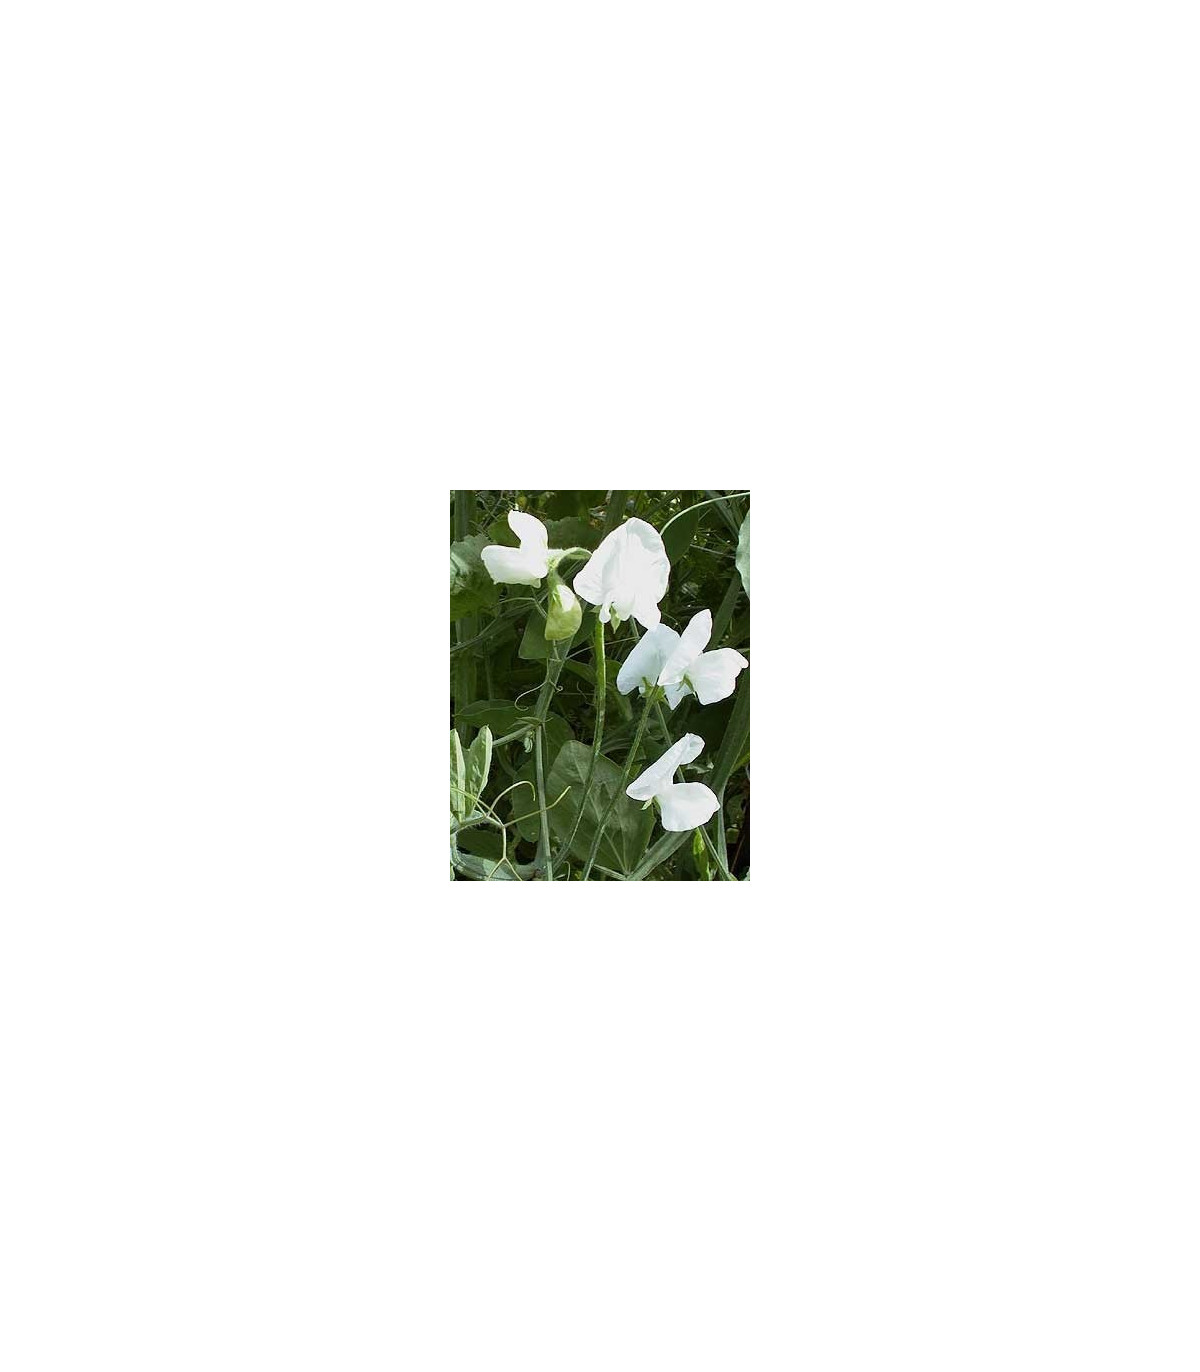 Hrachor popínavý kráľovský - Lathyrus odoratus - semená hrachora - semiačka - 20 ks